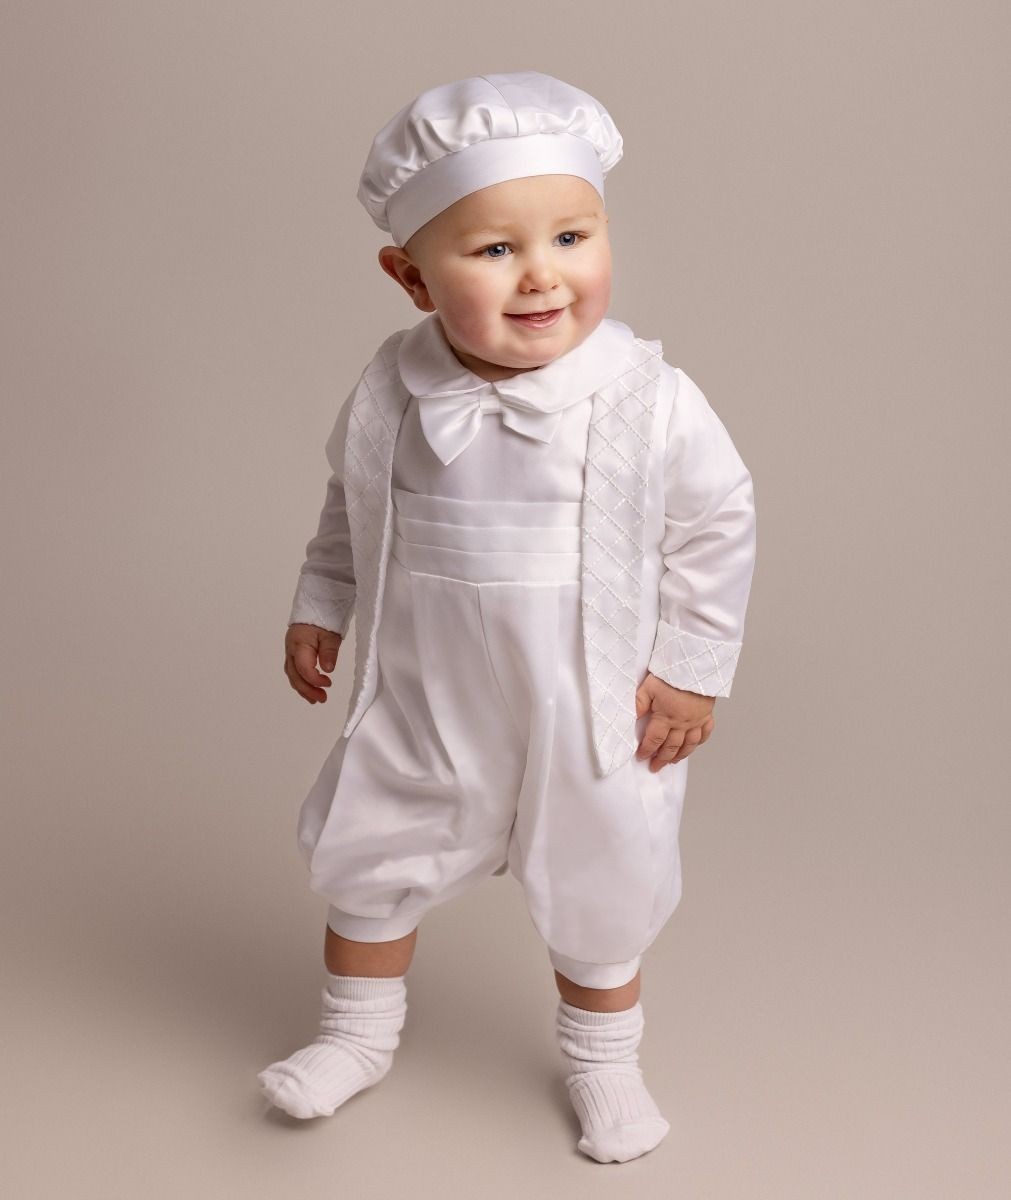 Babyjungen Weißes Tauf-Outfit Set - LIAM